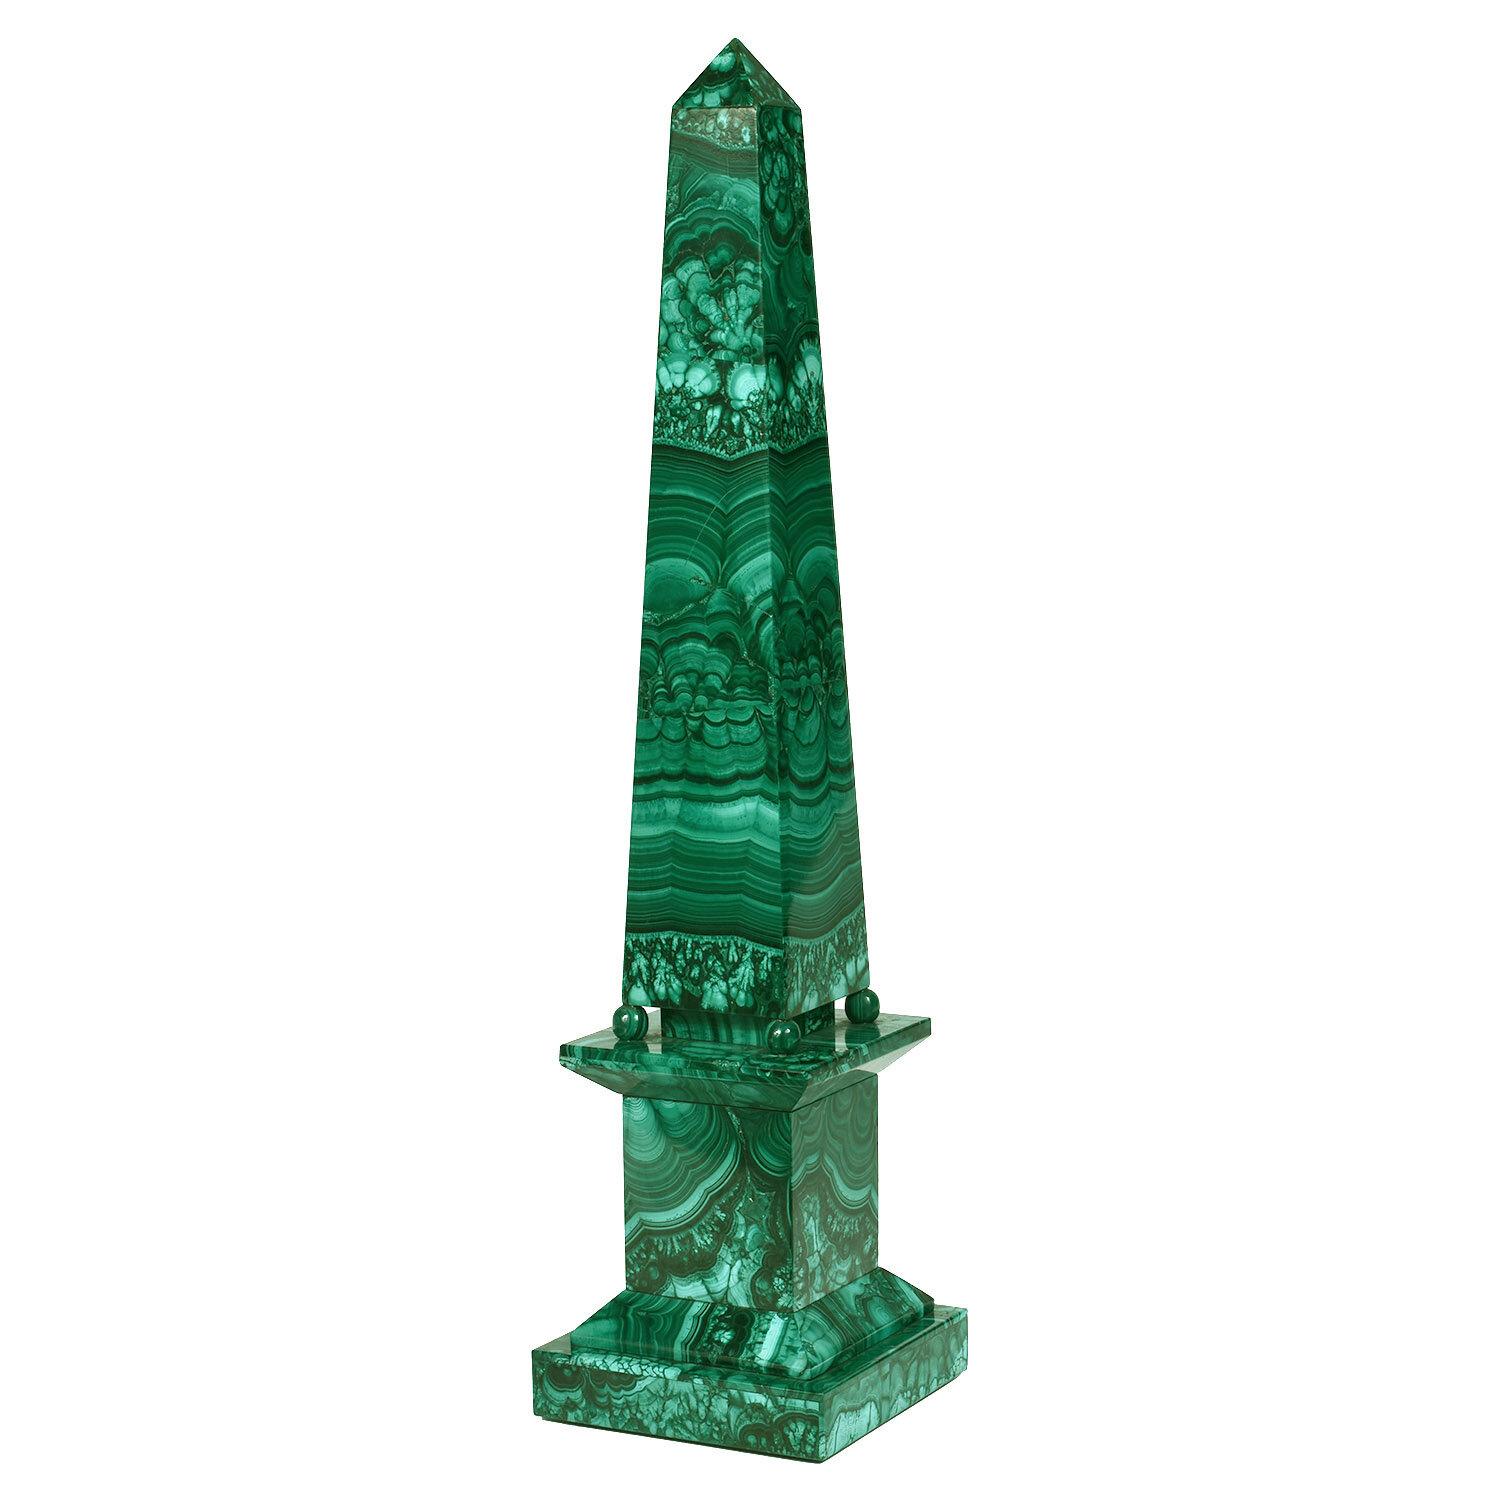 Dieser einzigartige Obelisk aus Malachit ist einer der besten, die mir je untergekommen sind. Er zeichnet sich durch angenehme Proportionen, ein königliches Design und einen Grad an Komplexität aus, der mehr Geschick und Präzision erfordert als die